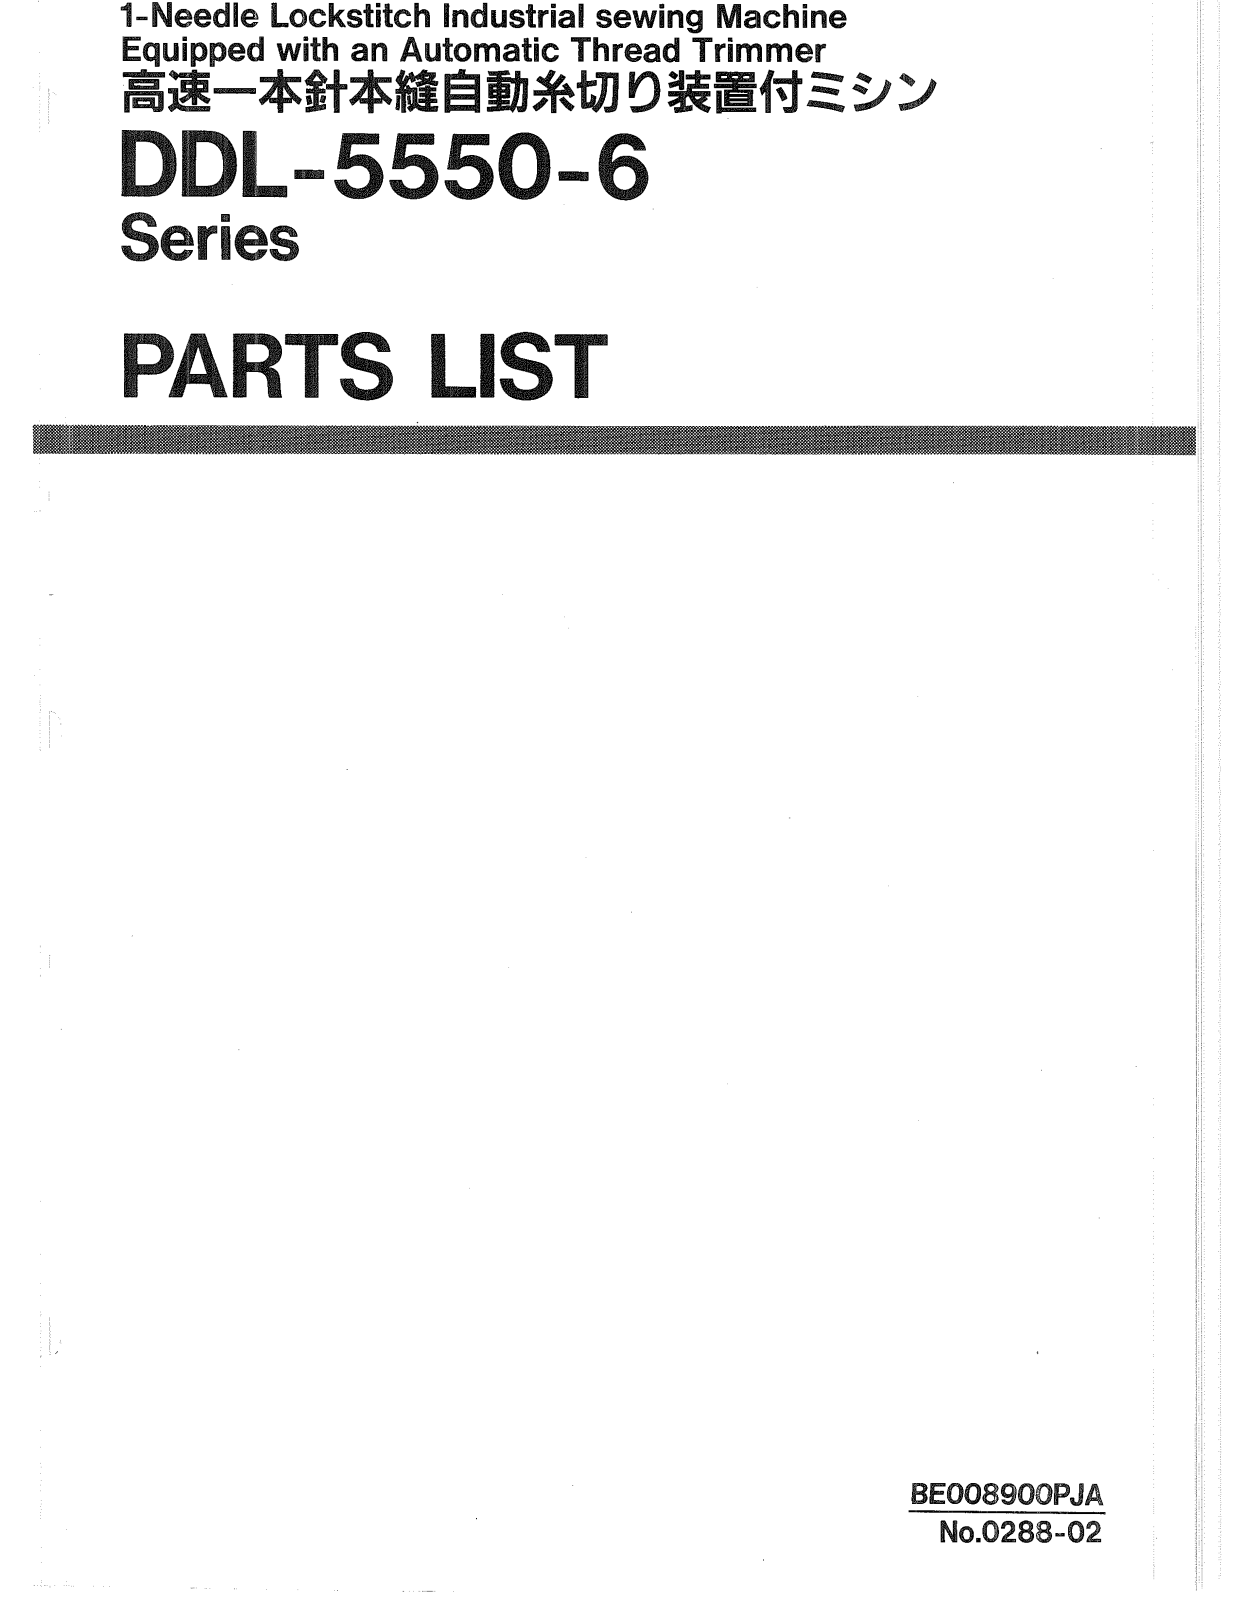 Juki DDL-5550-6 Parts List